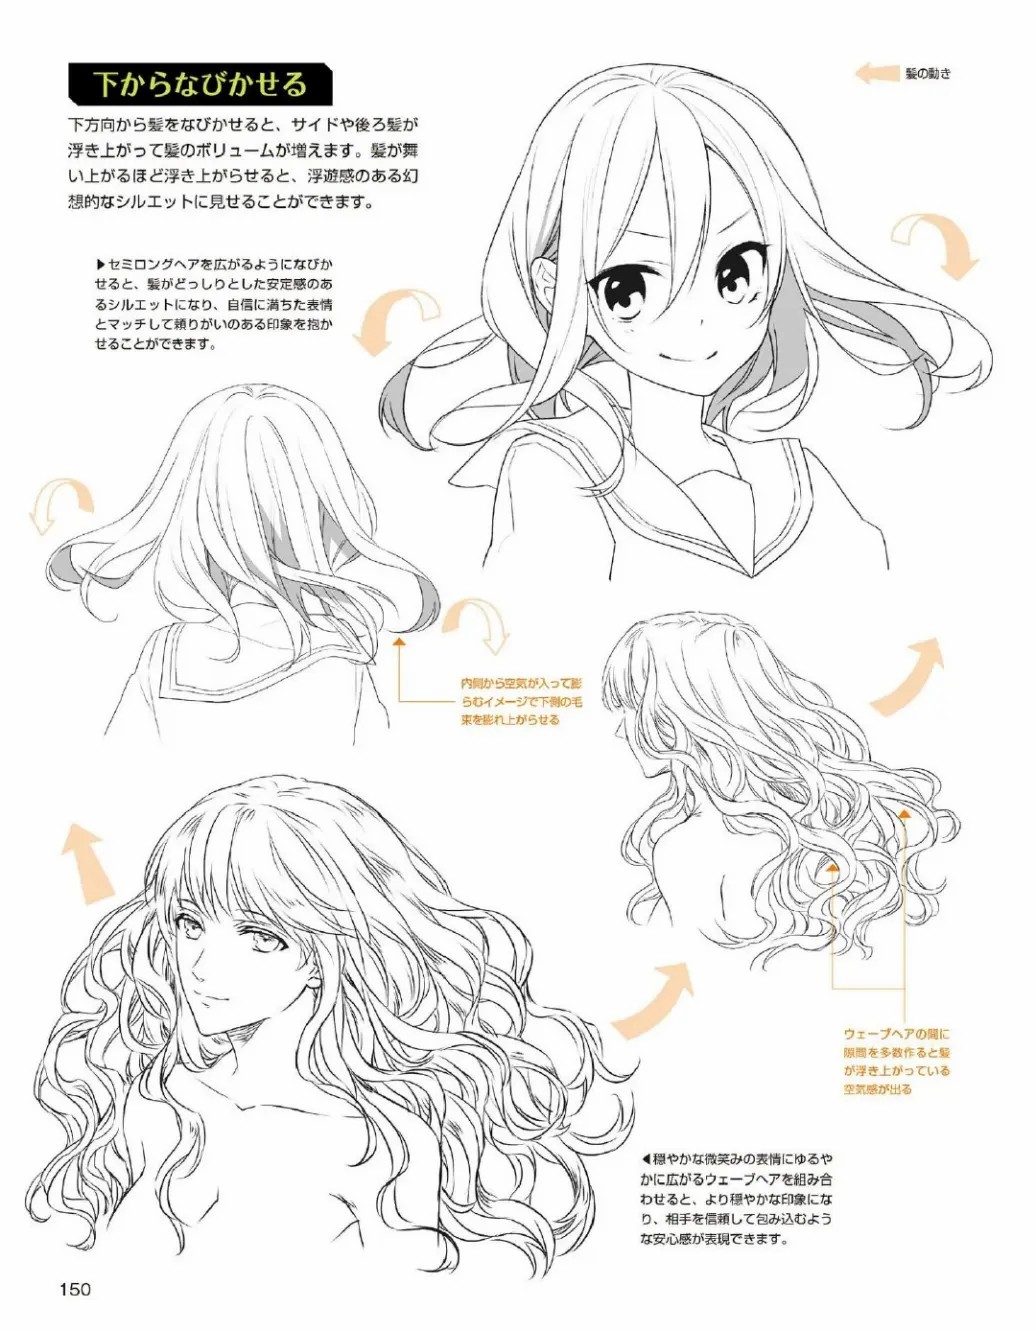 「教程」漫画角色头发的绘制技法 part 02 头发的基础绘制方法_漫联教育